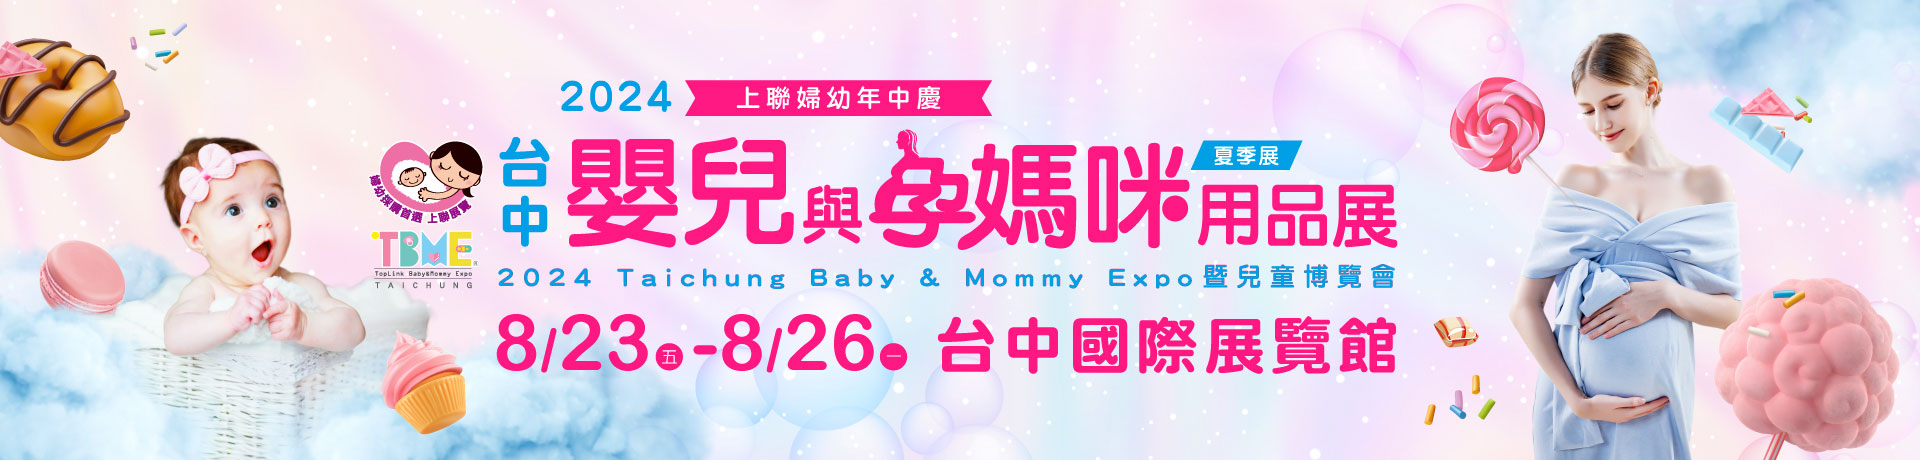 2024台中嬰兒與孕媽咪用品展暨兒童博覽會(夏季展)